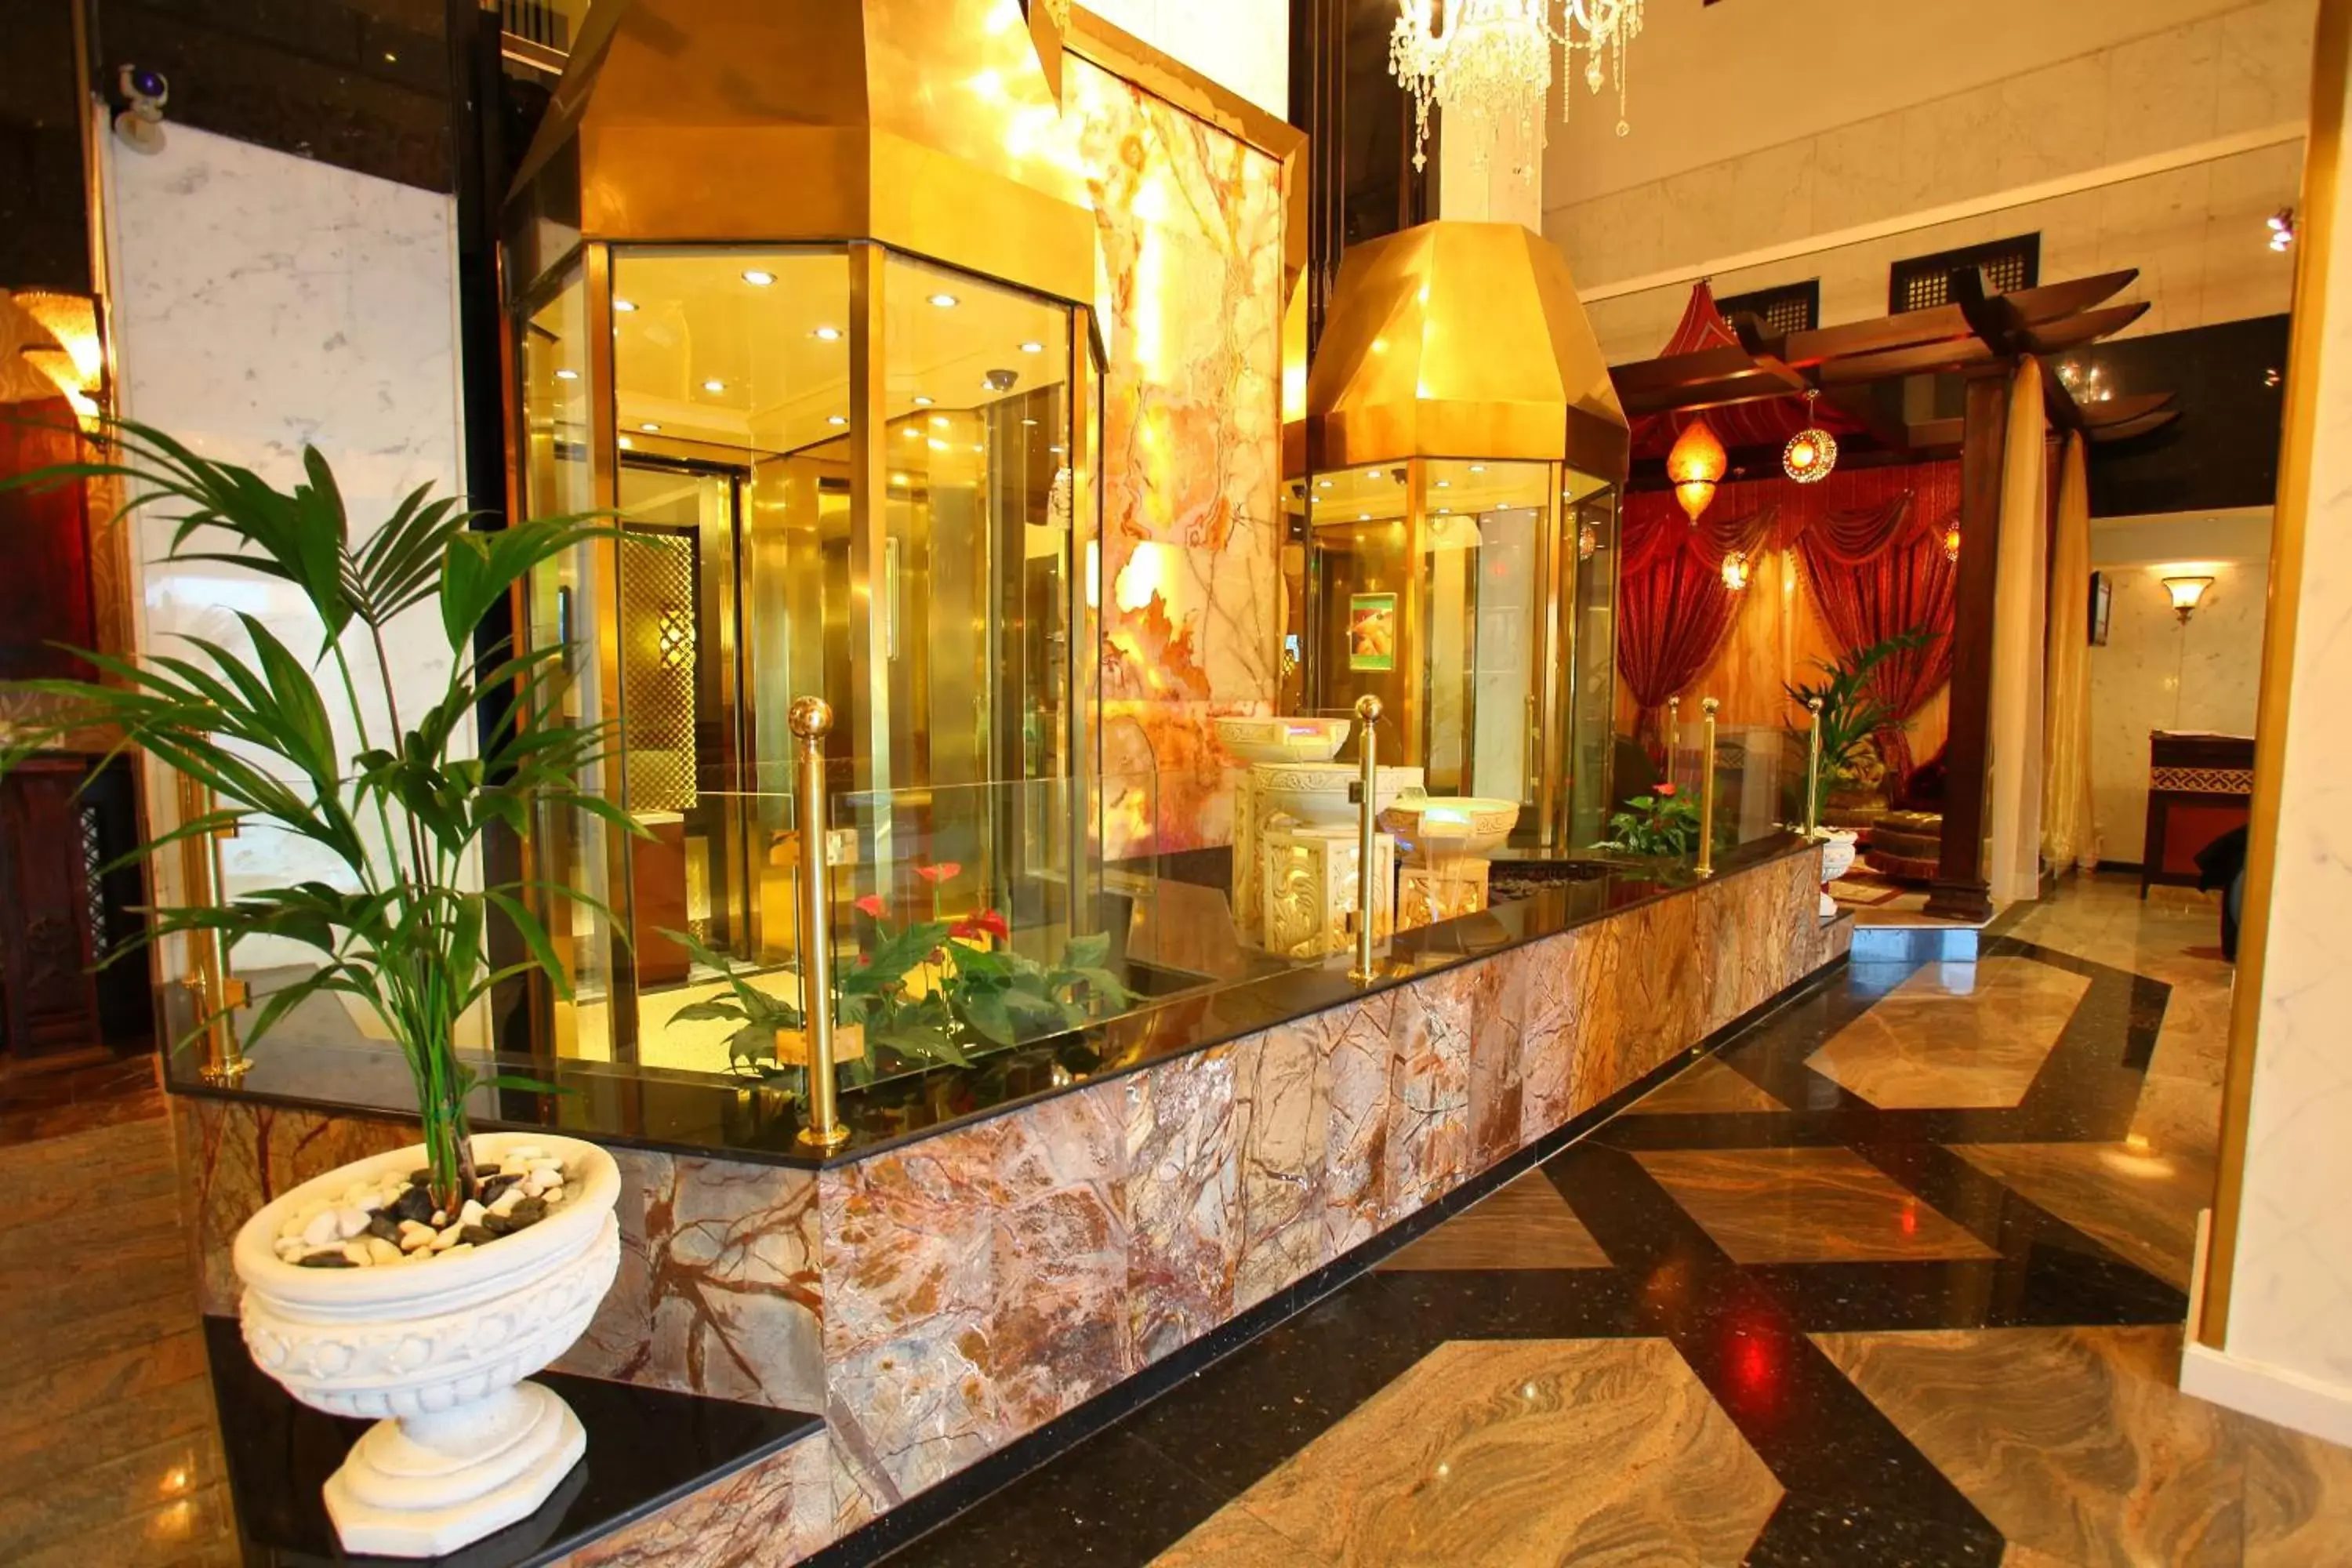 Lobby or reception in Arabian Courtyard Hotel & Spa